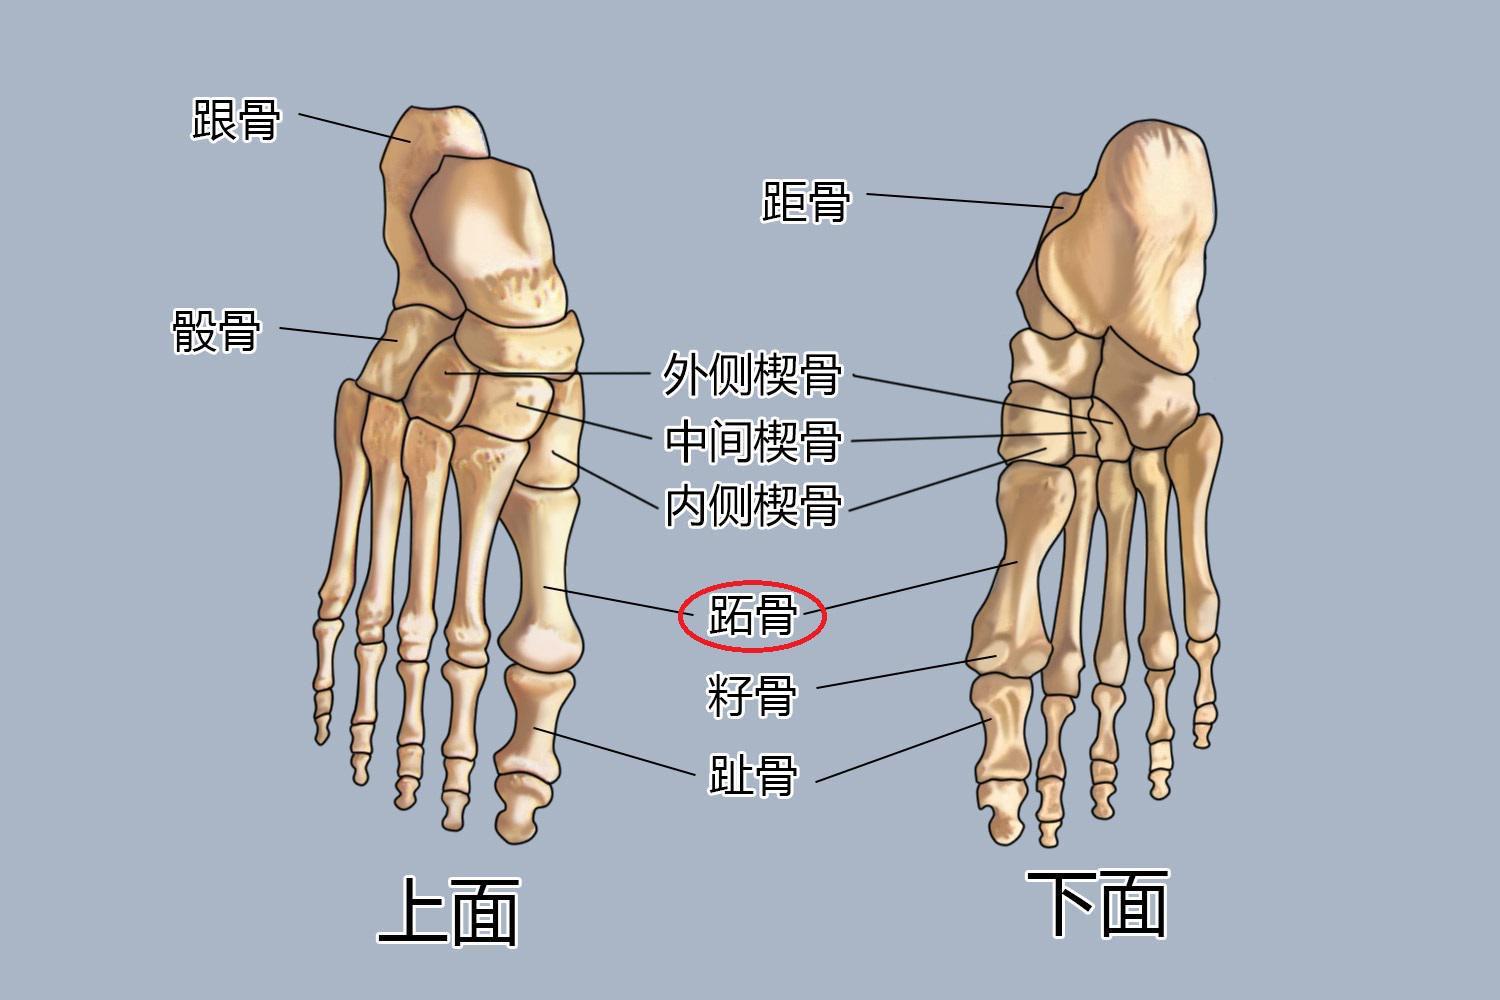 脚趾解剖名称示意图图片